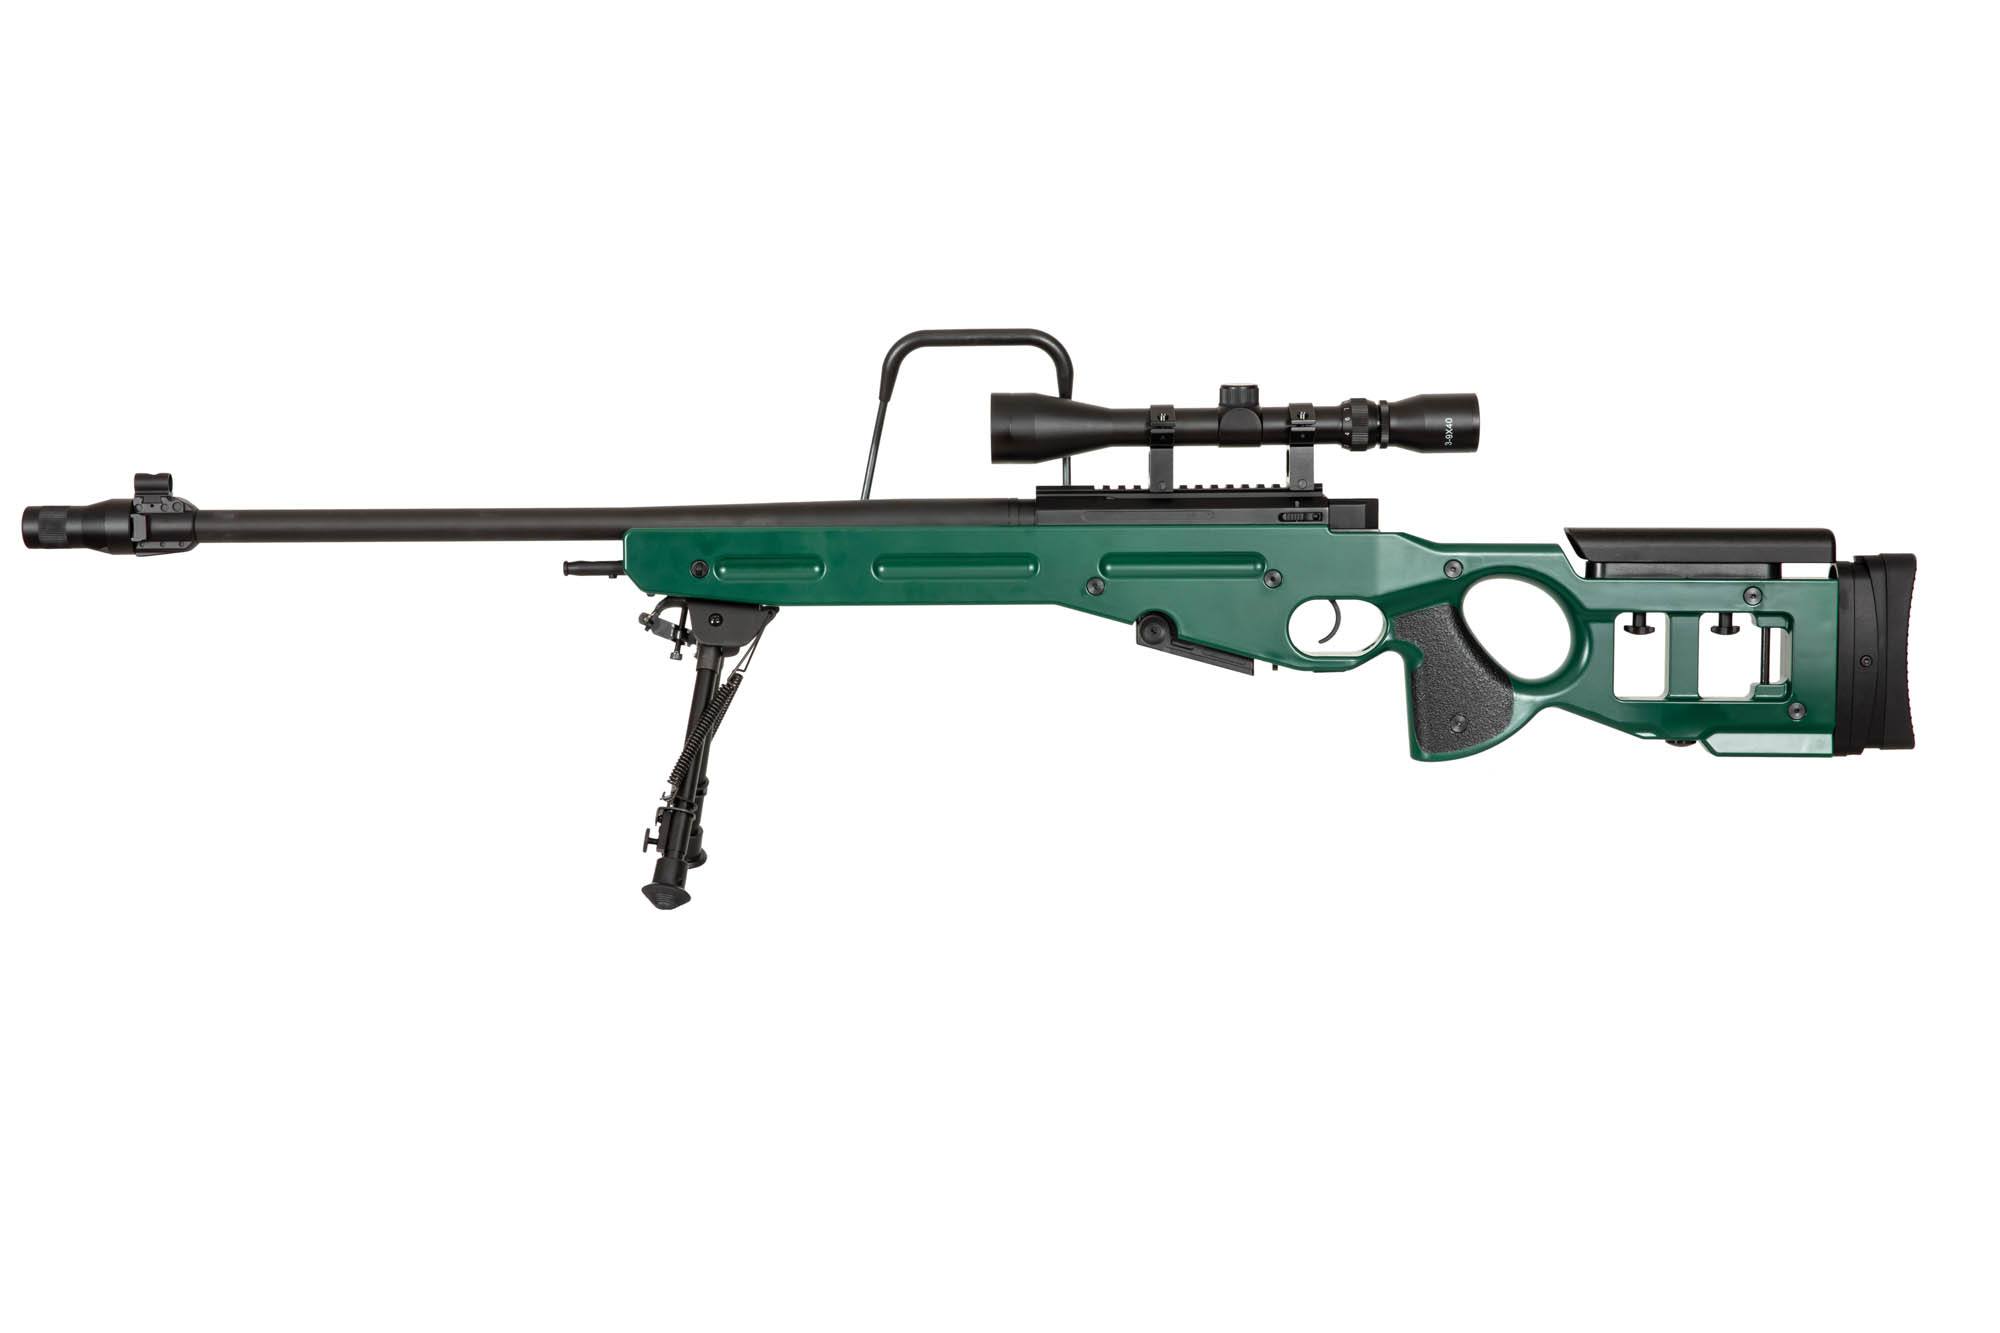 SV-98 CORE™ sniper rifle replica with bipod, scope and sound suppressor - russian green